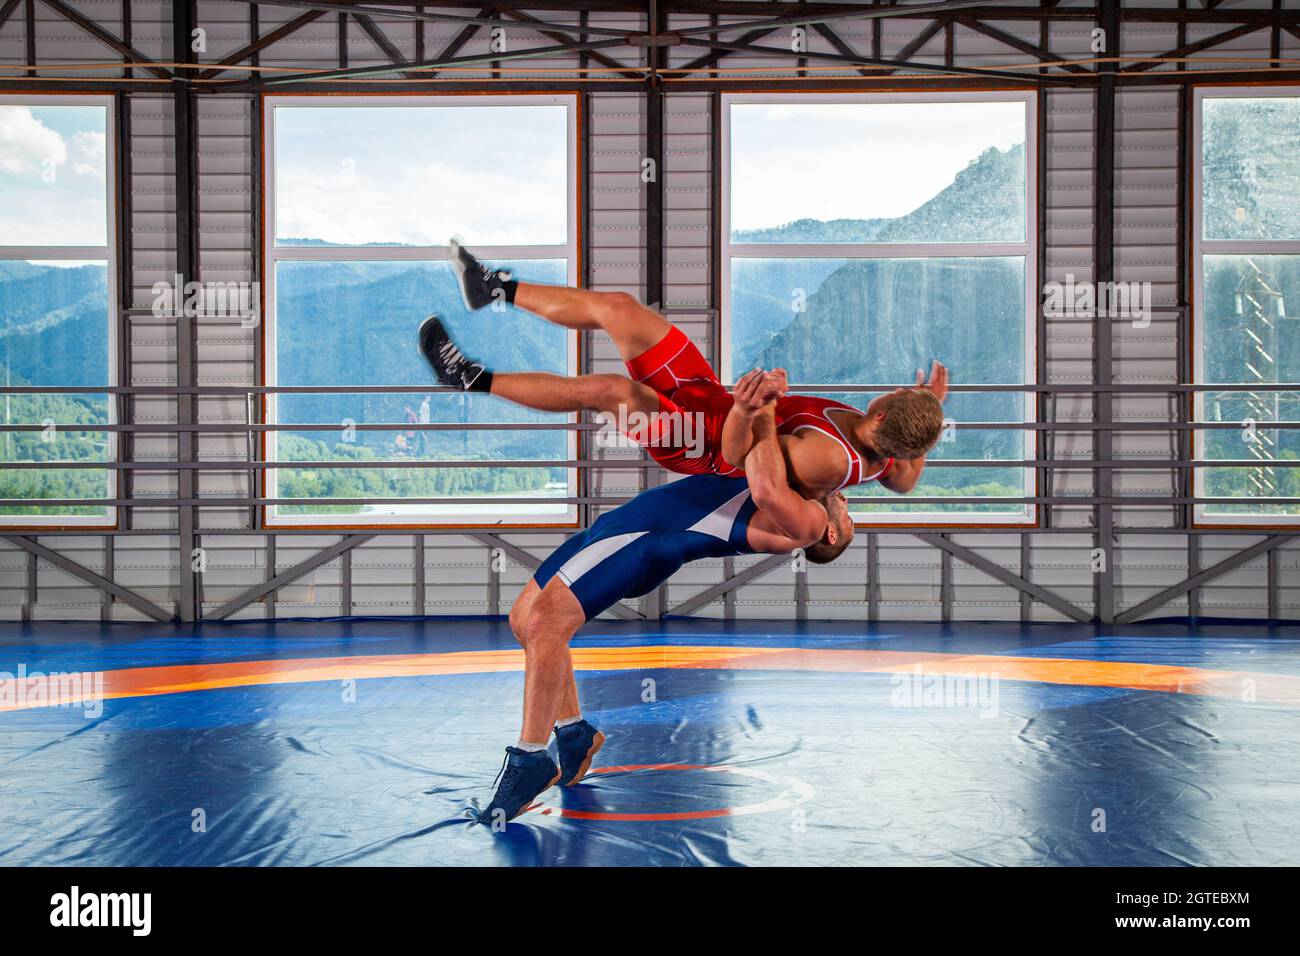 Greco-roman Wrestling Training, Grappling. Zwei griechisch-römische Ringer  in roter und blauer Uniform Stockfotografie - Alamy